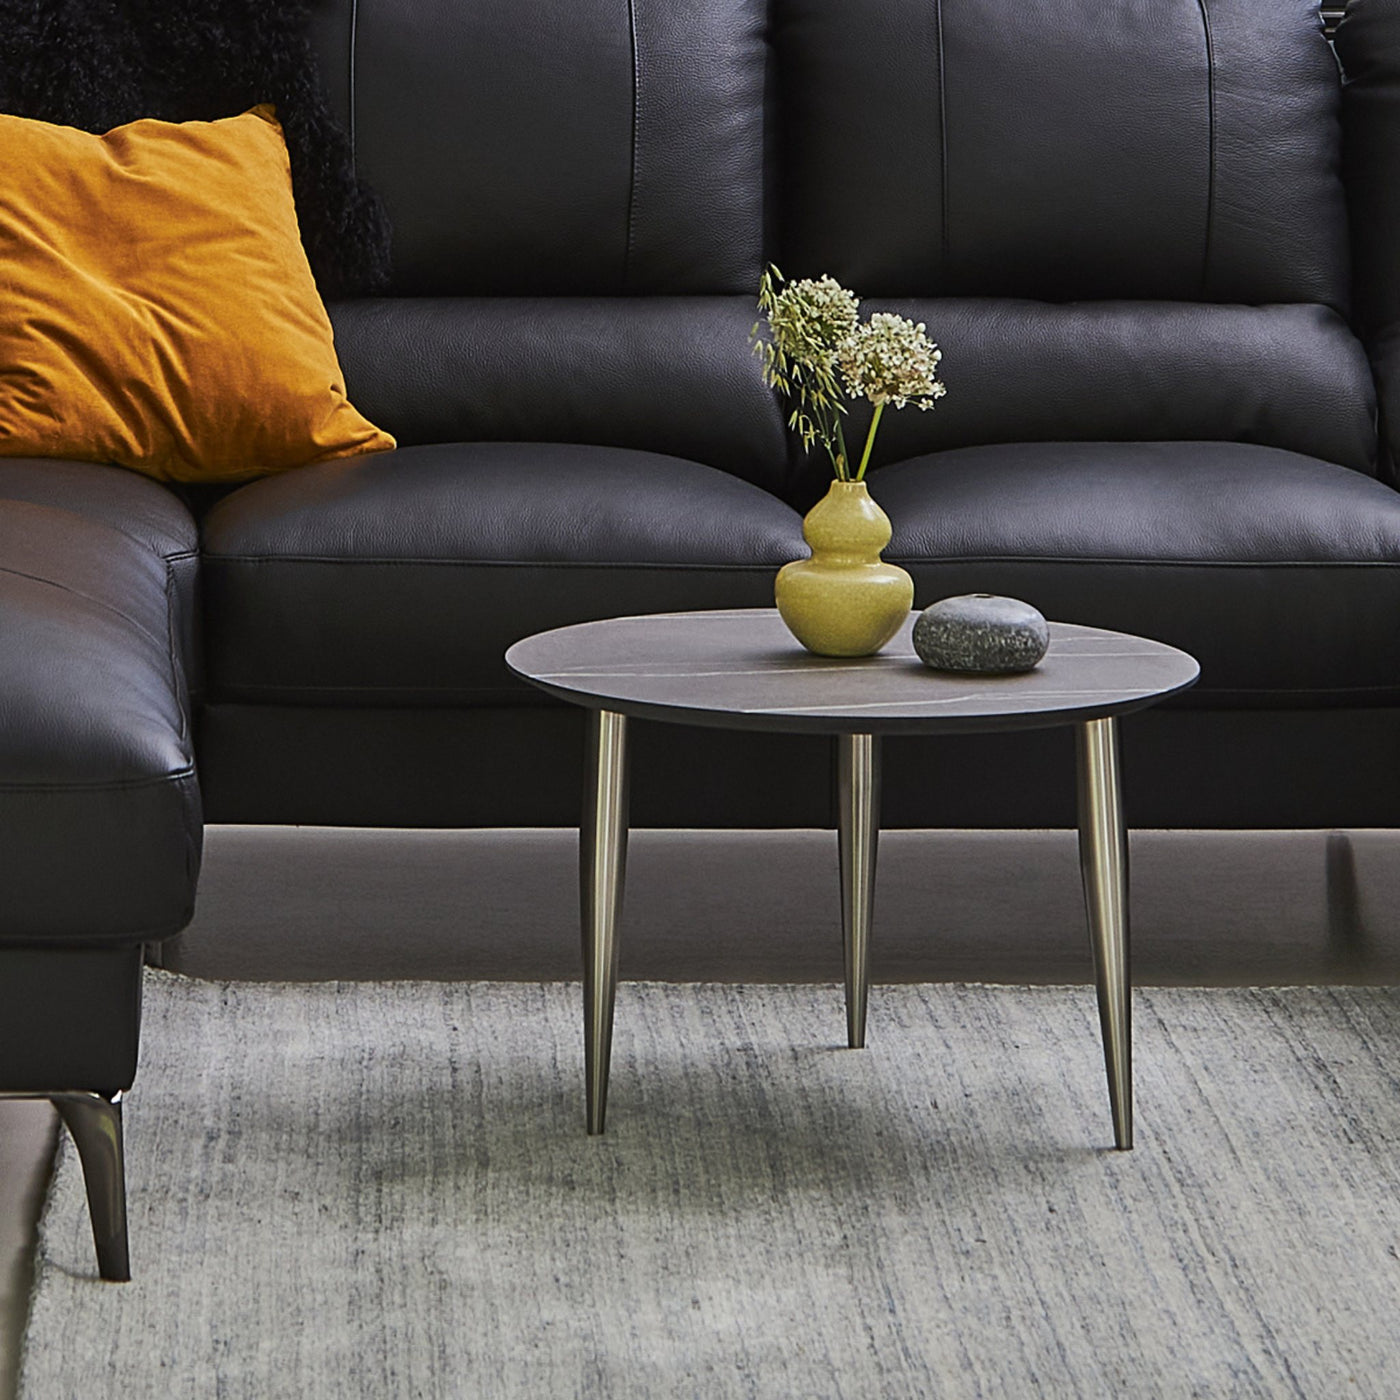 Miljøbillede af Katrine sofabord fra Thomsen Furniture, der har stålben og en overflade i marmorlook.